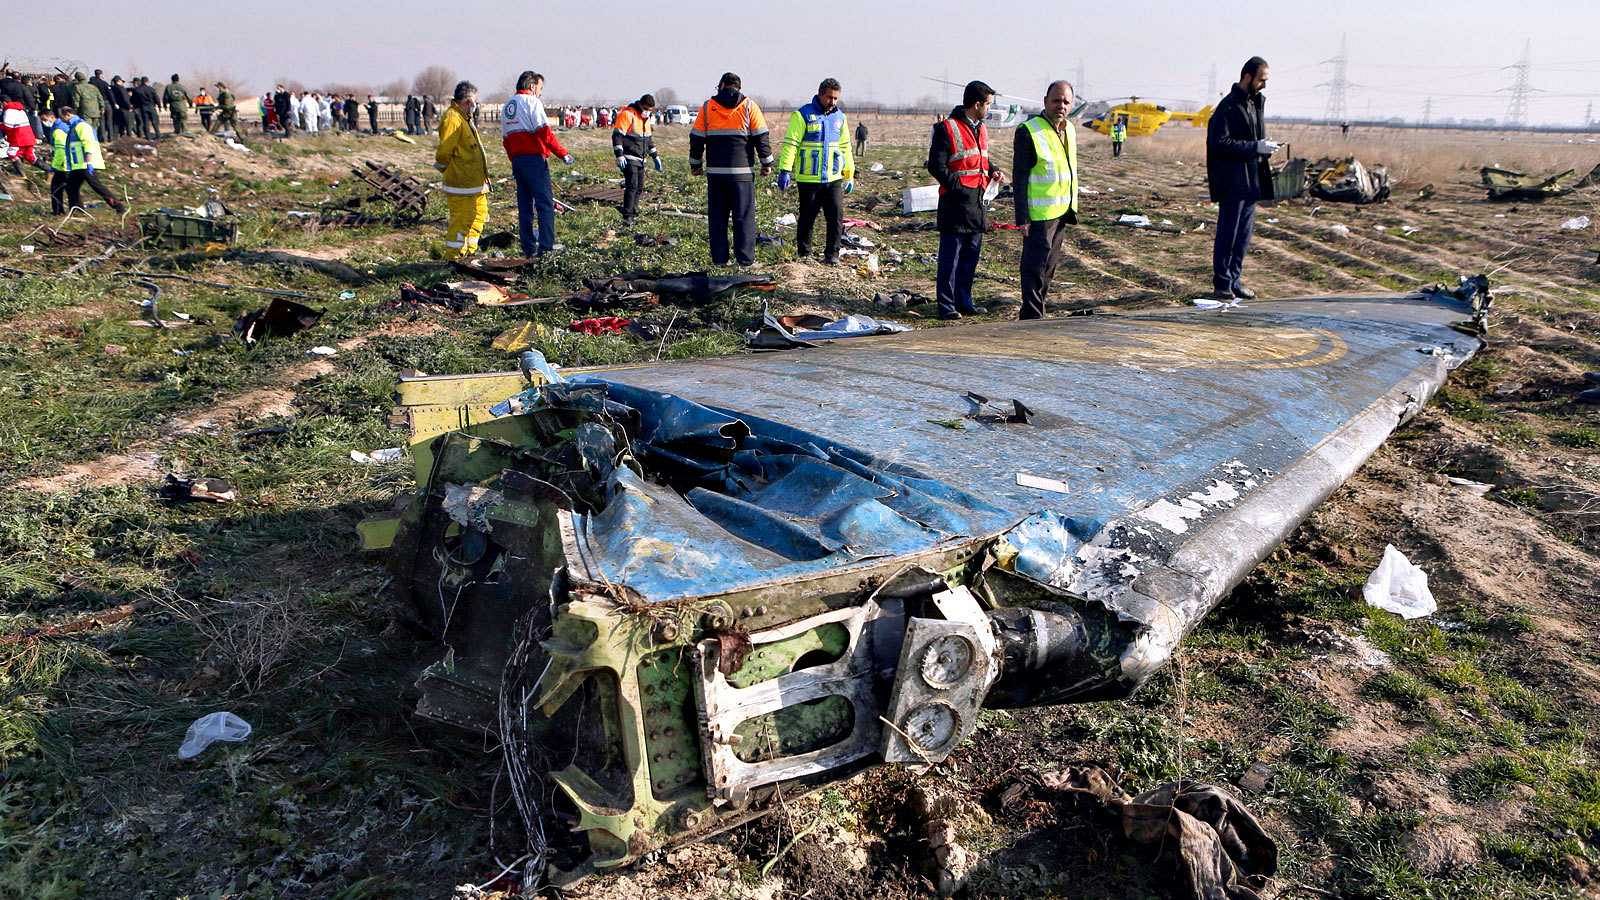 El Boeing 737 de la aerolínea ucraniana UIA que este miércoles se estrelló cerca de Teherán, causando la muerte de sus 176 ocupantes, trataba de regresar al aeropuerto de la capital iraní y sufrió un incendio antes de estrellarse, según consta en el informe preliminar de la Organización de la Aviación Civil de Irán, que también recoge que, pese a todo, los pilotos no avisaron por radio de ninguna anomalía.

Un dictamen provisional que apunta a un accidente pese a que Ucrania, que este jueves ha enviado a un equipo de expertos para colaborar en la investigación, no descarta entre las hipótesis que maneja que la aeronave fuera derribada por un misil o por un atentado terrorista.